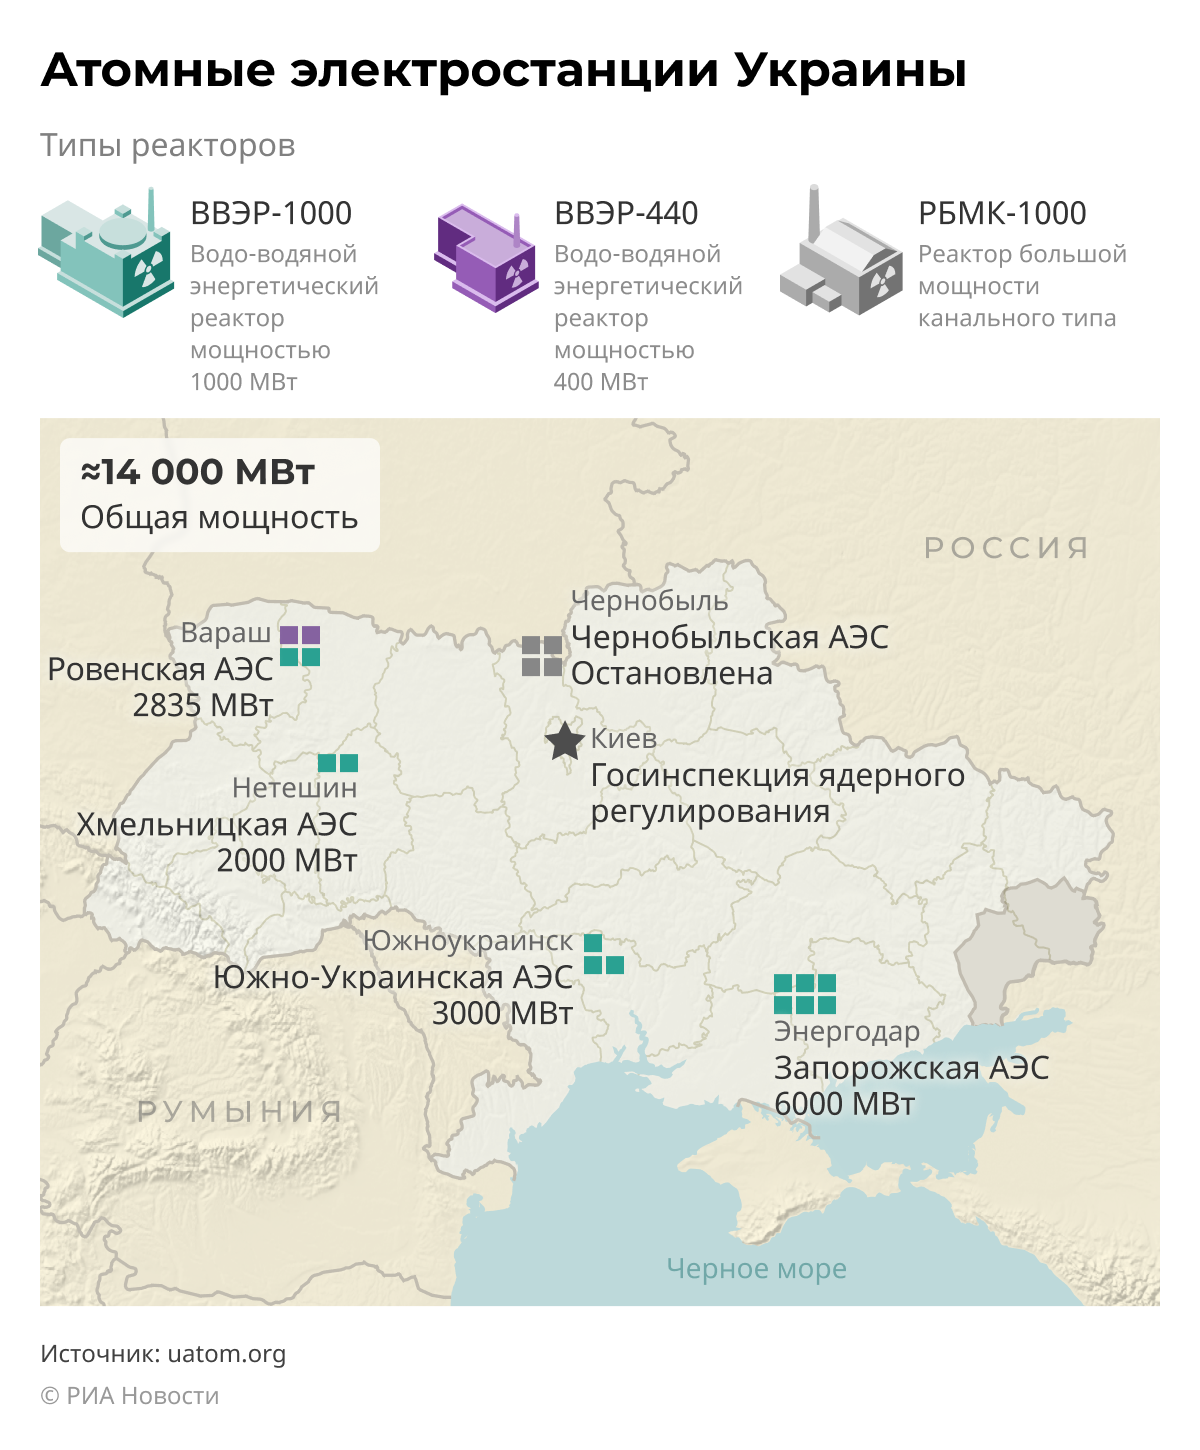 Πυρηνικοί σταθμοί ηλεκτροπαραγωγής της Ουκρανίας